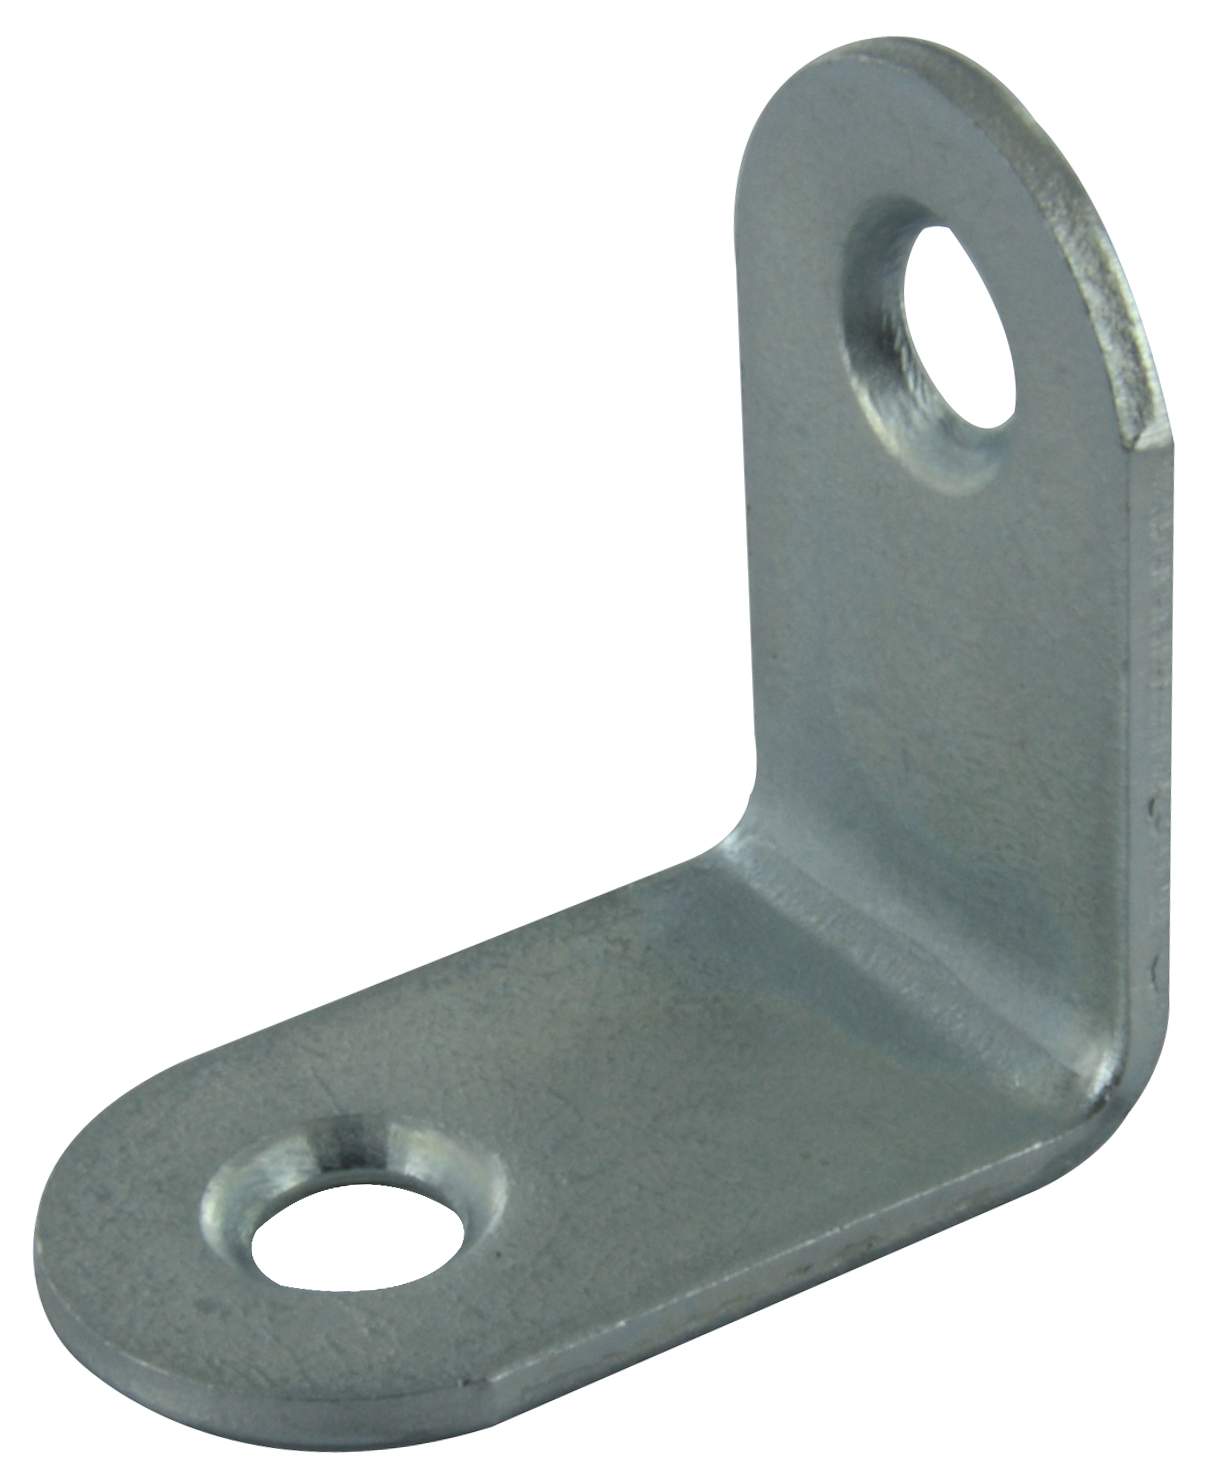 Chair bracket, 24x24x15 mm, galvanized steel, round bond, 10 pieces